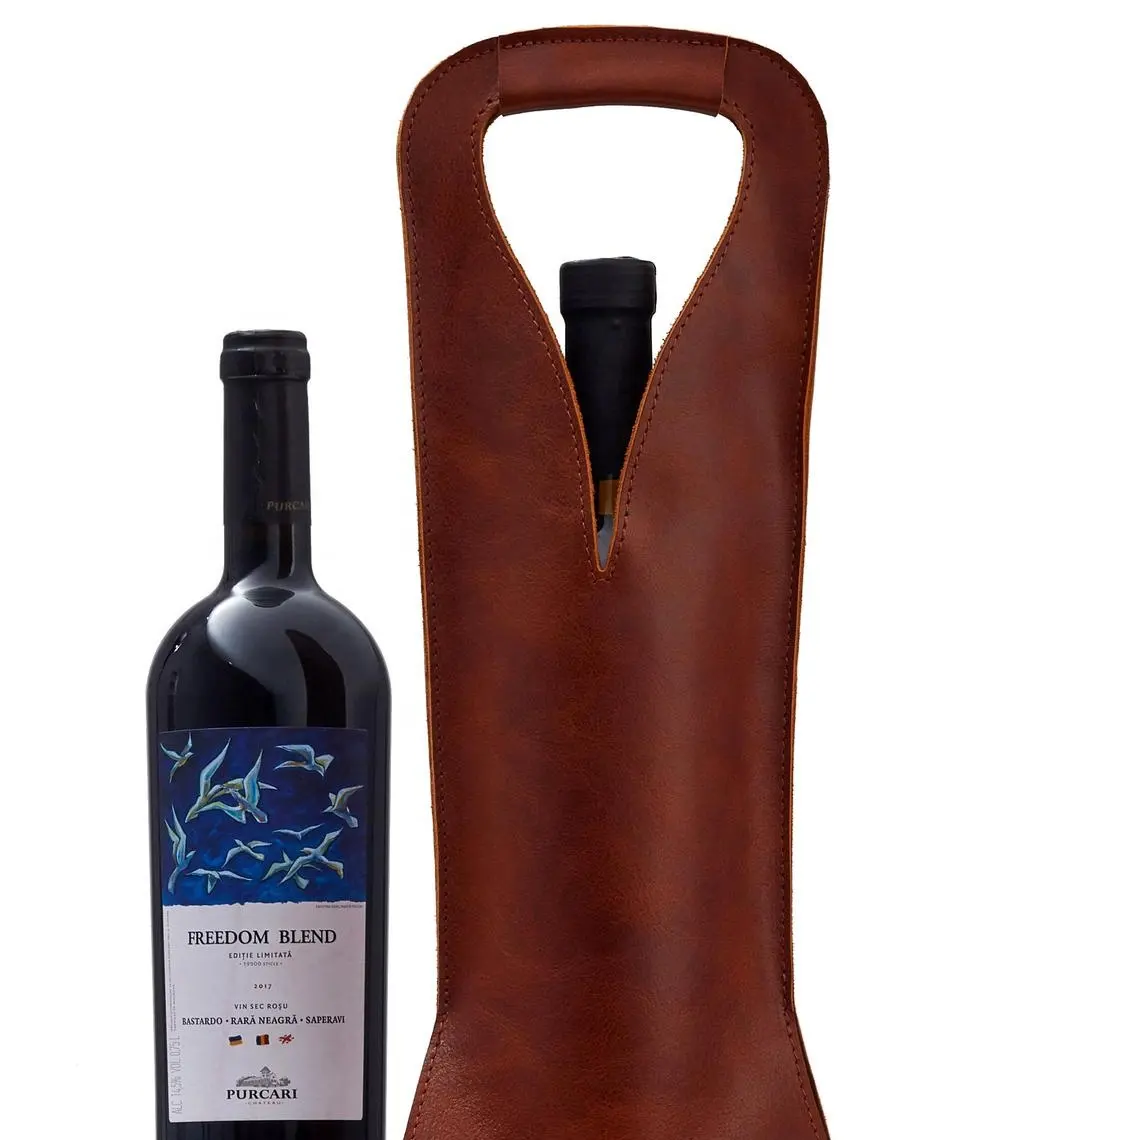 Capa de couro para garrafa de vinho, capa para armazenamento completo de garrafas feitas de couro